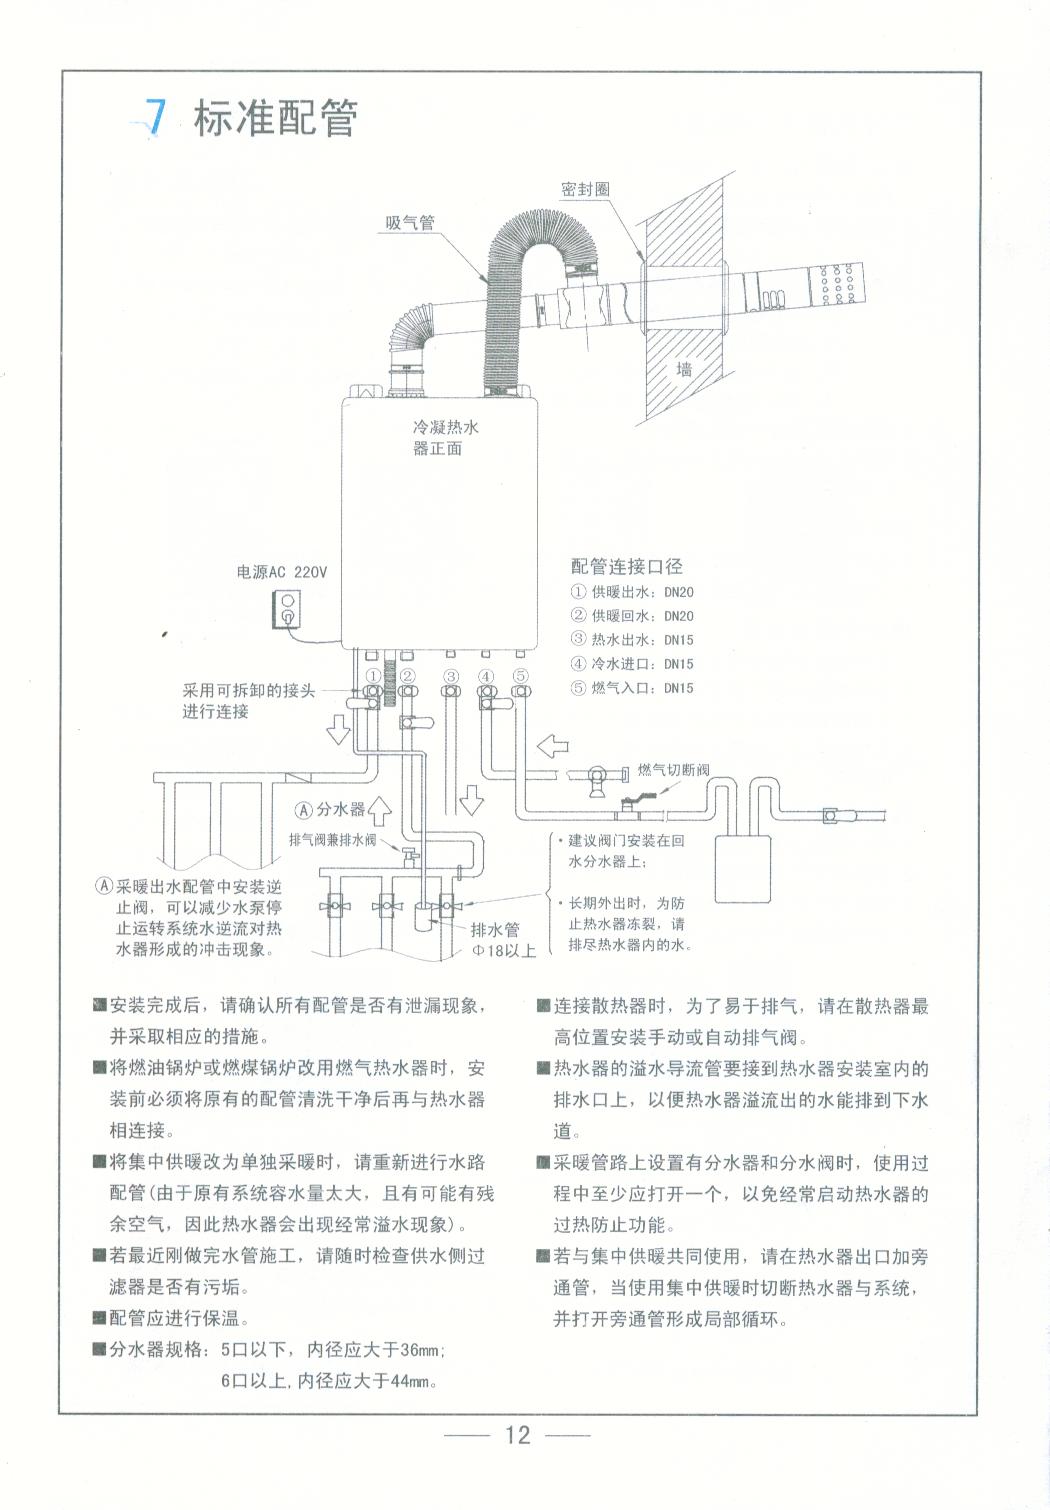 庆东冷凝式锅炉-冷凝式壁挂炉kca资料及使用说明3